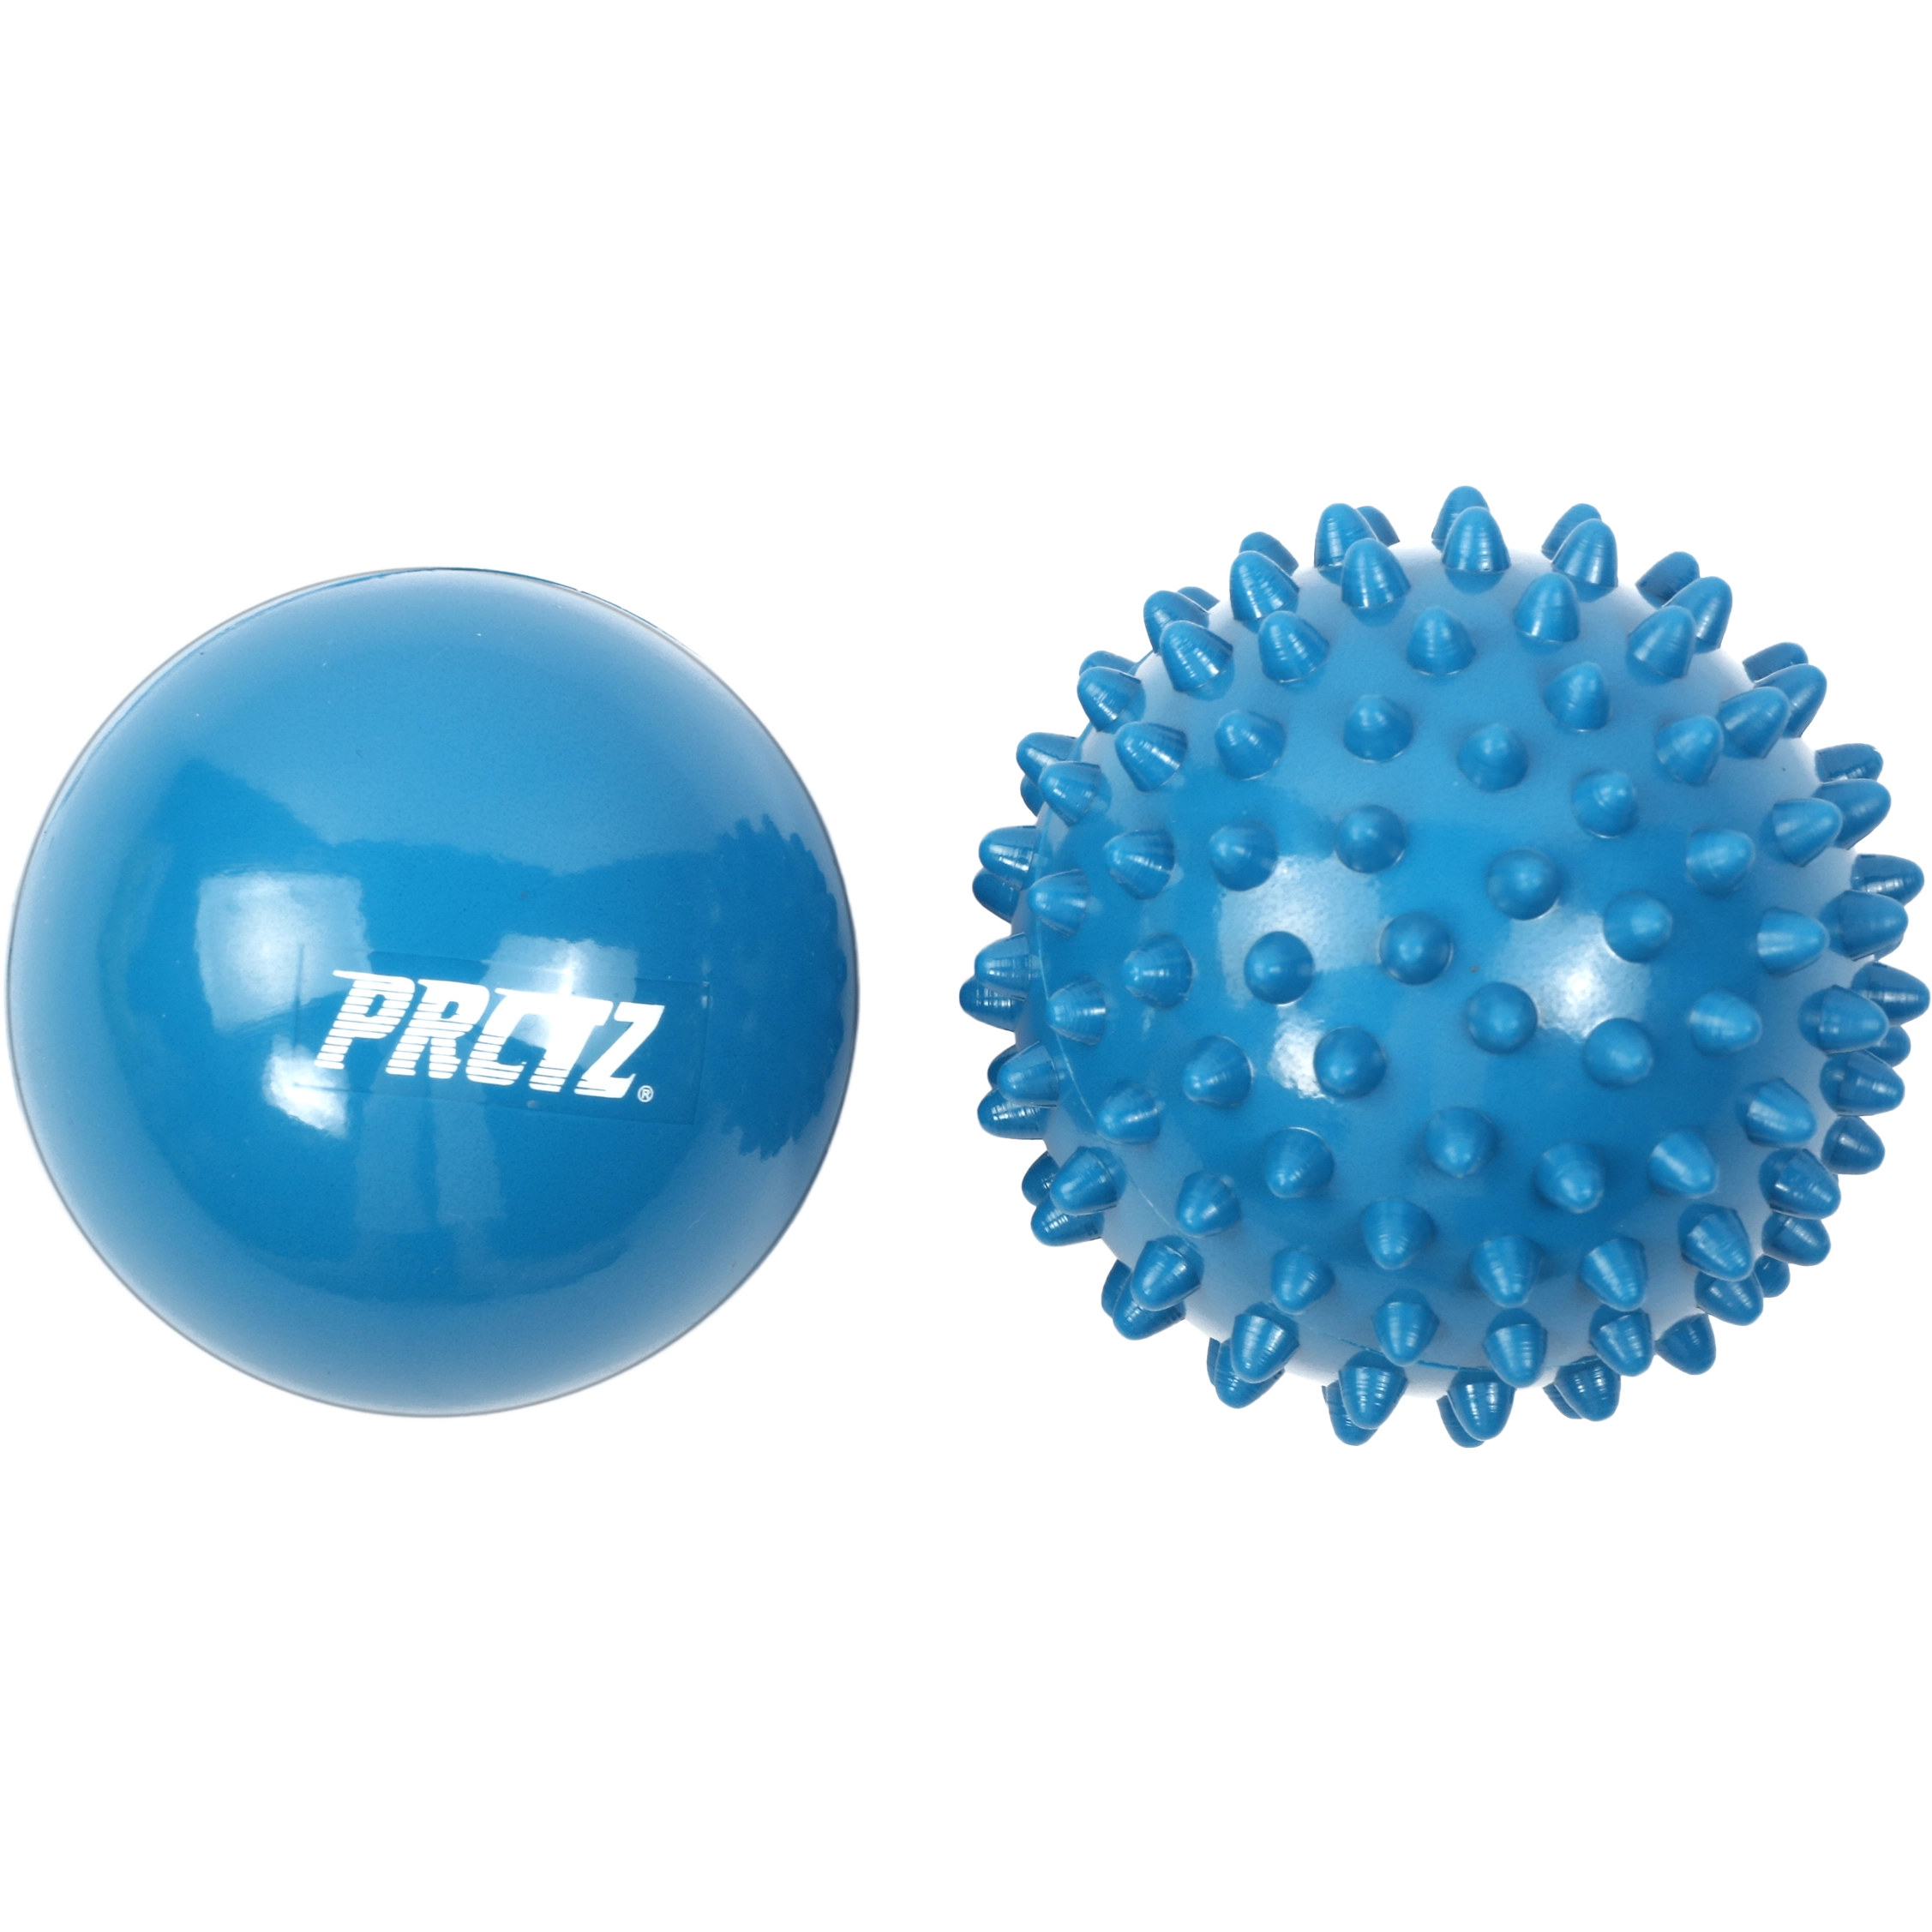 Набор массажных мячей PRCTZ MASSAGE THERAPY 2-PIECE BALL SET, 6 см с гарантией